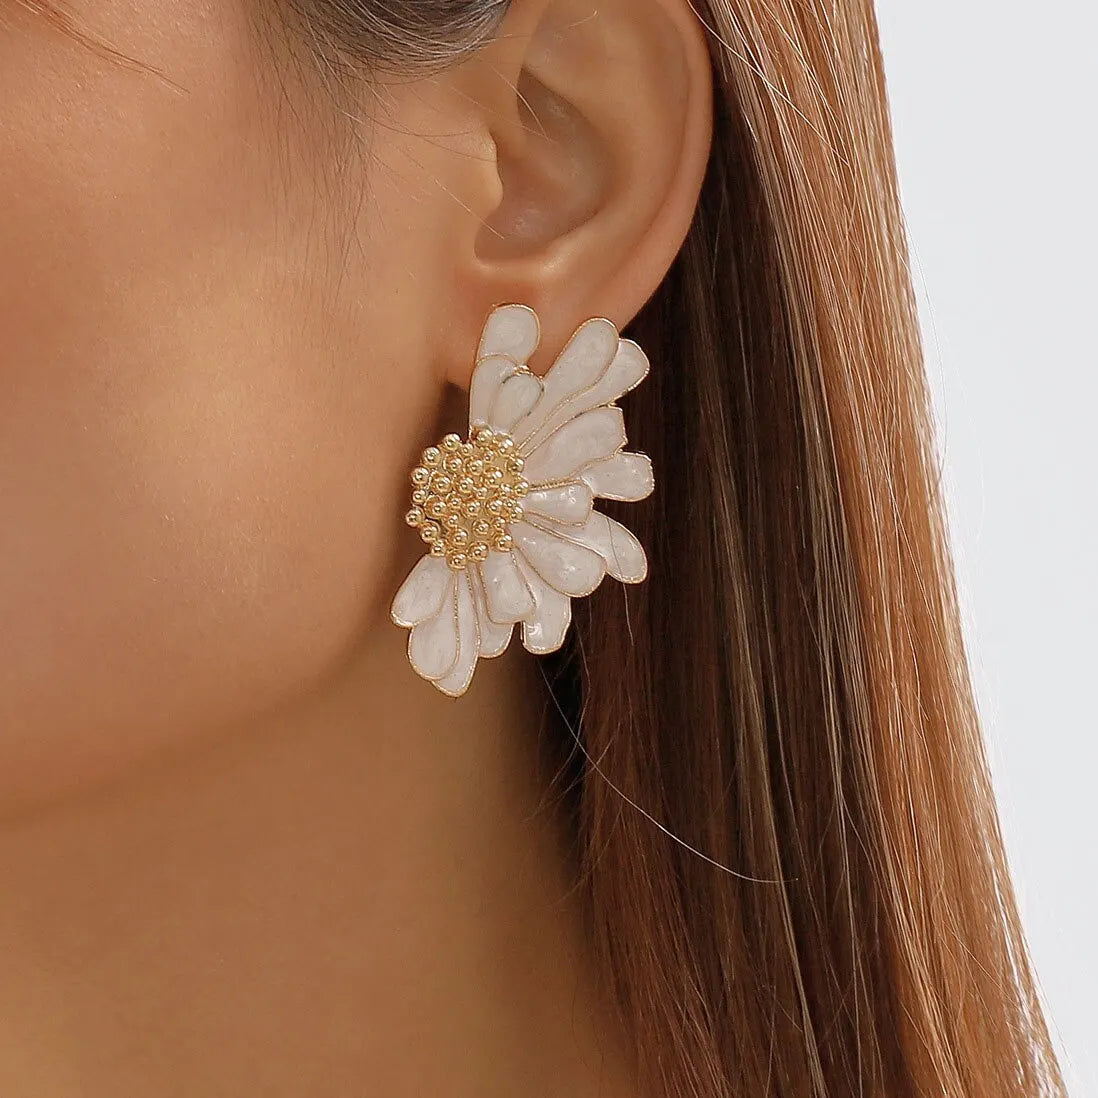 Boho Colorful Big Flower Petal Irregular Stud Earring for Women Trendy Kpop Sweet Piercing Earring Ear Y2K Jewelry Accessories